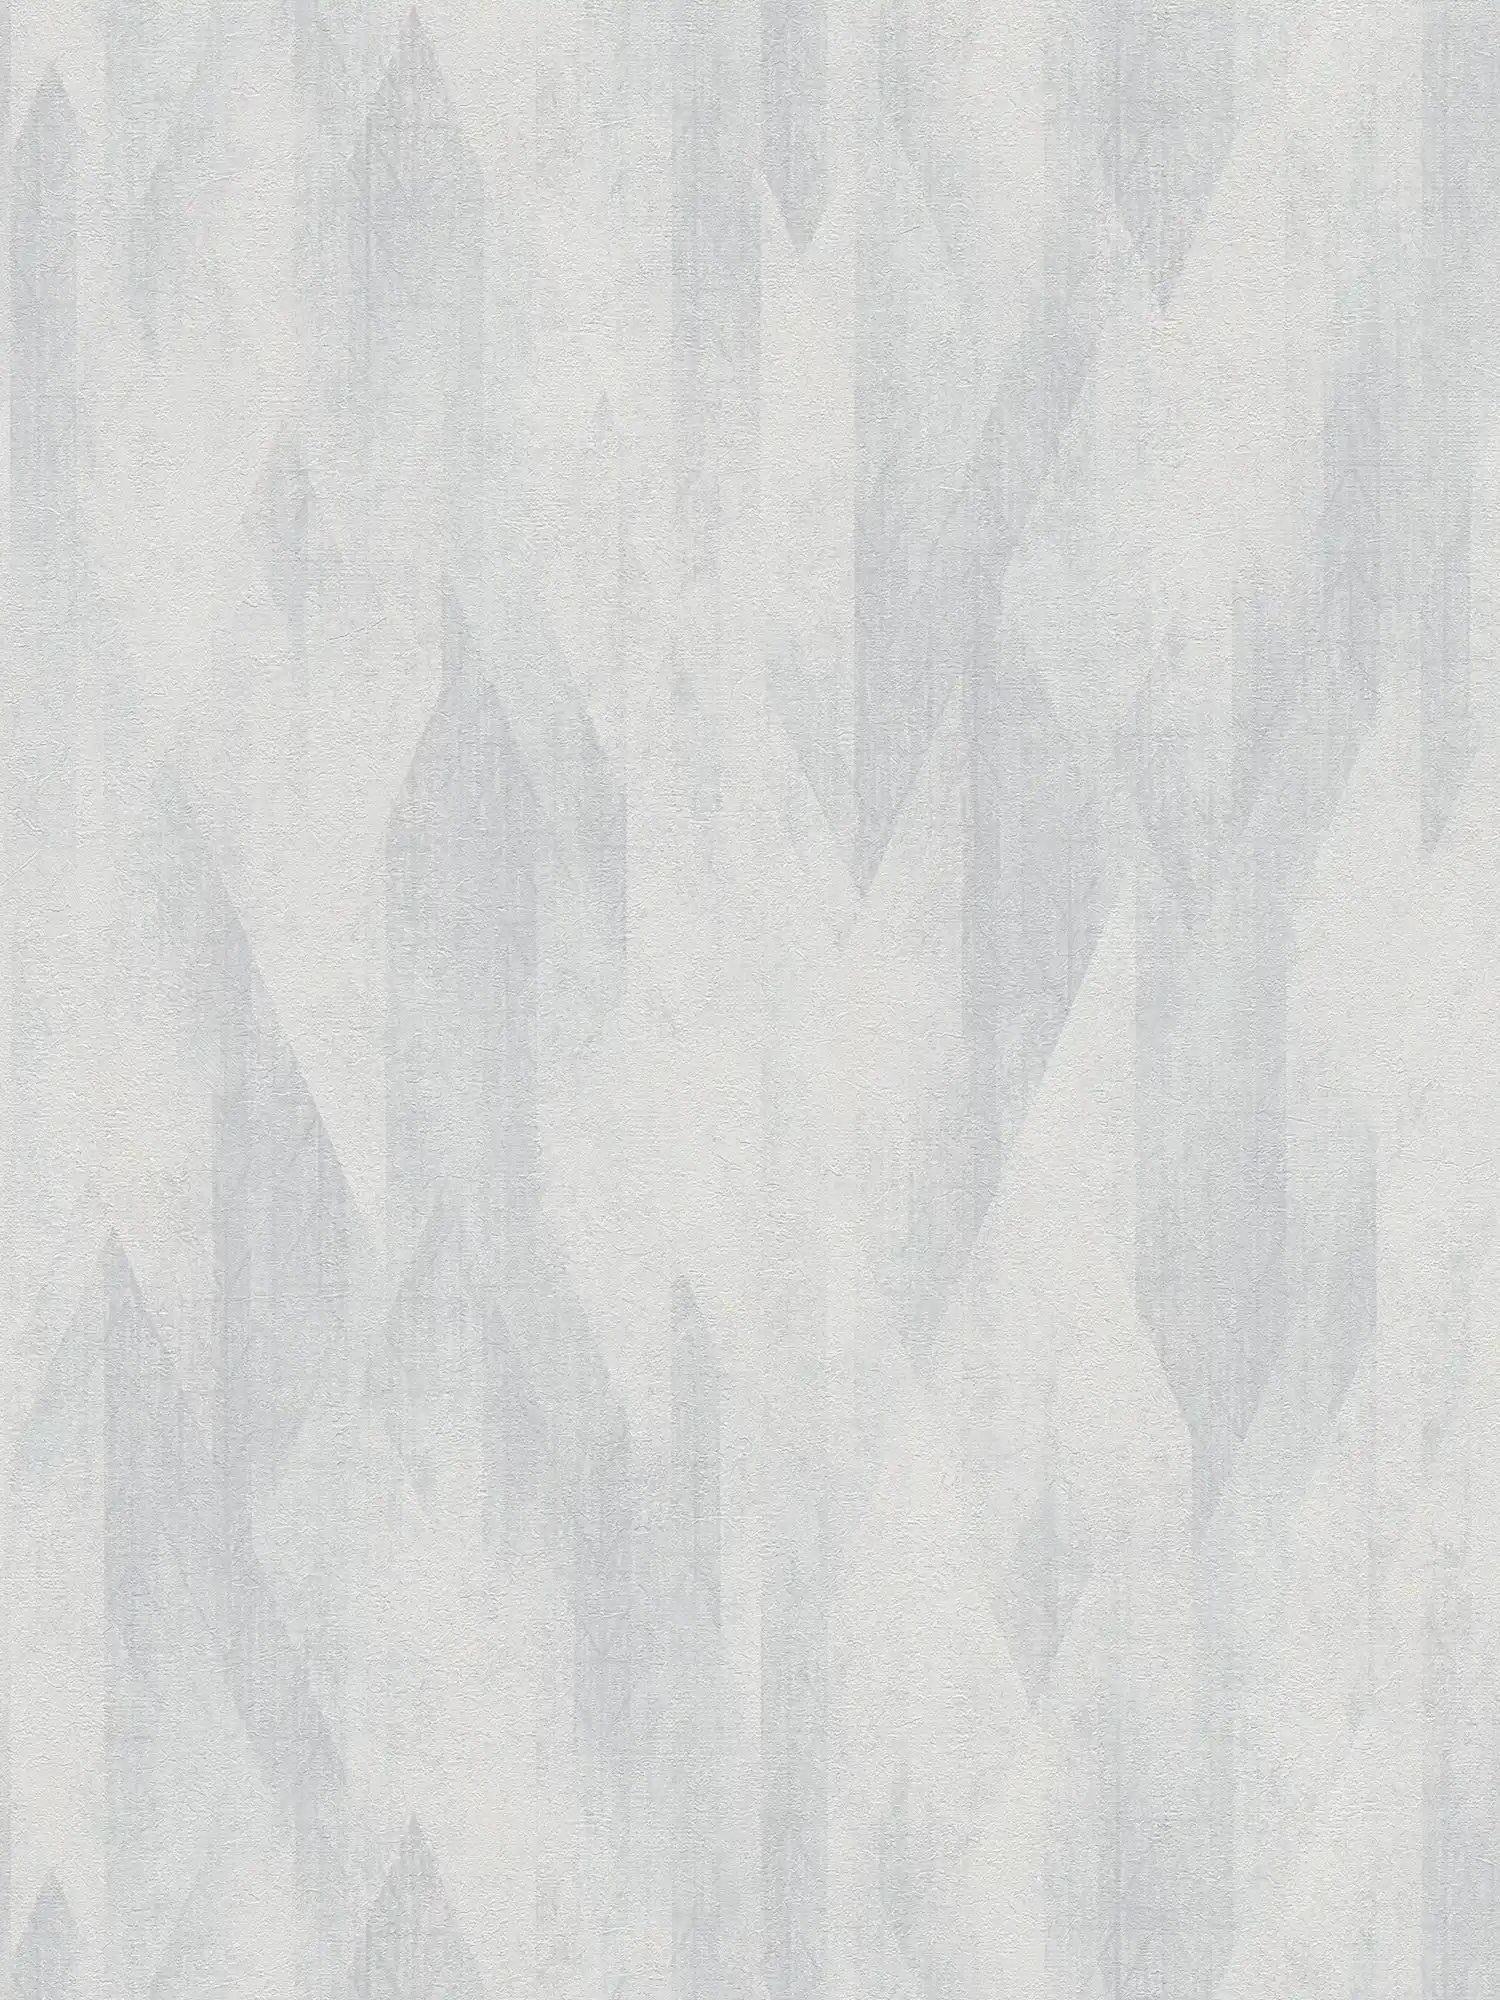 Grafische Vliestapete mit dezenten Rautenmuster – Grau, Weiß
